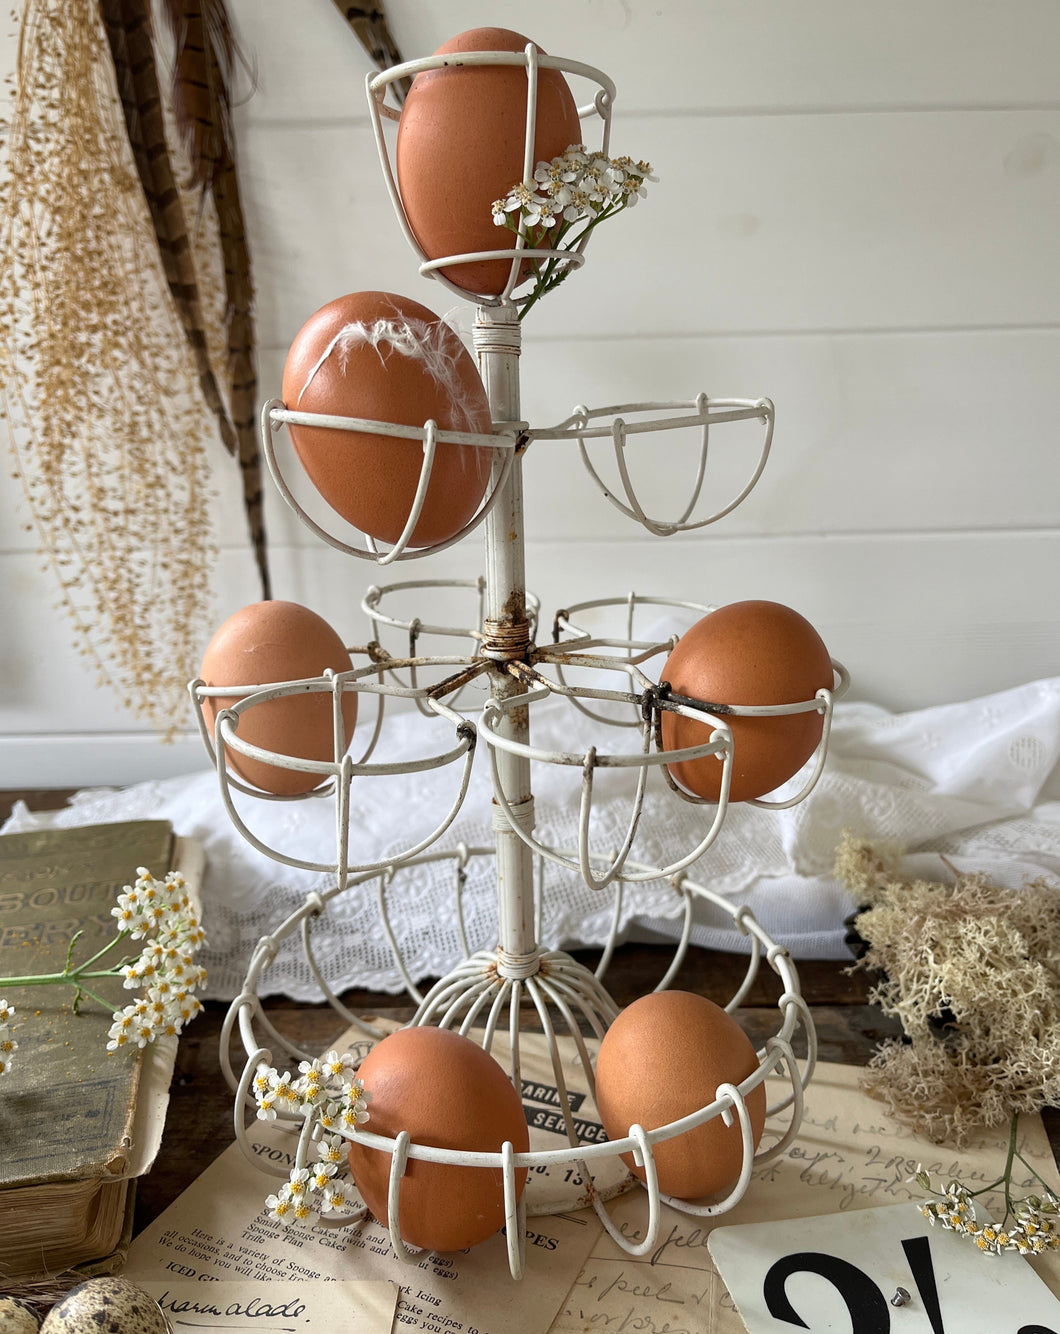 Vintage Egg Stand